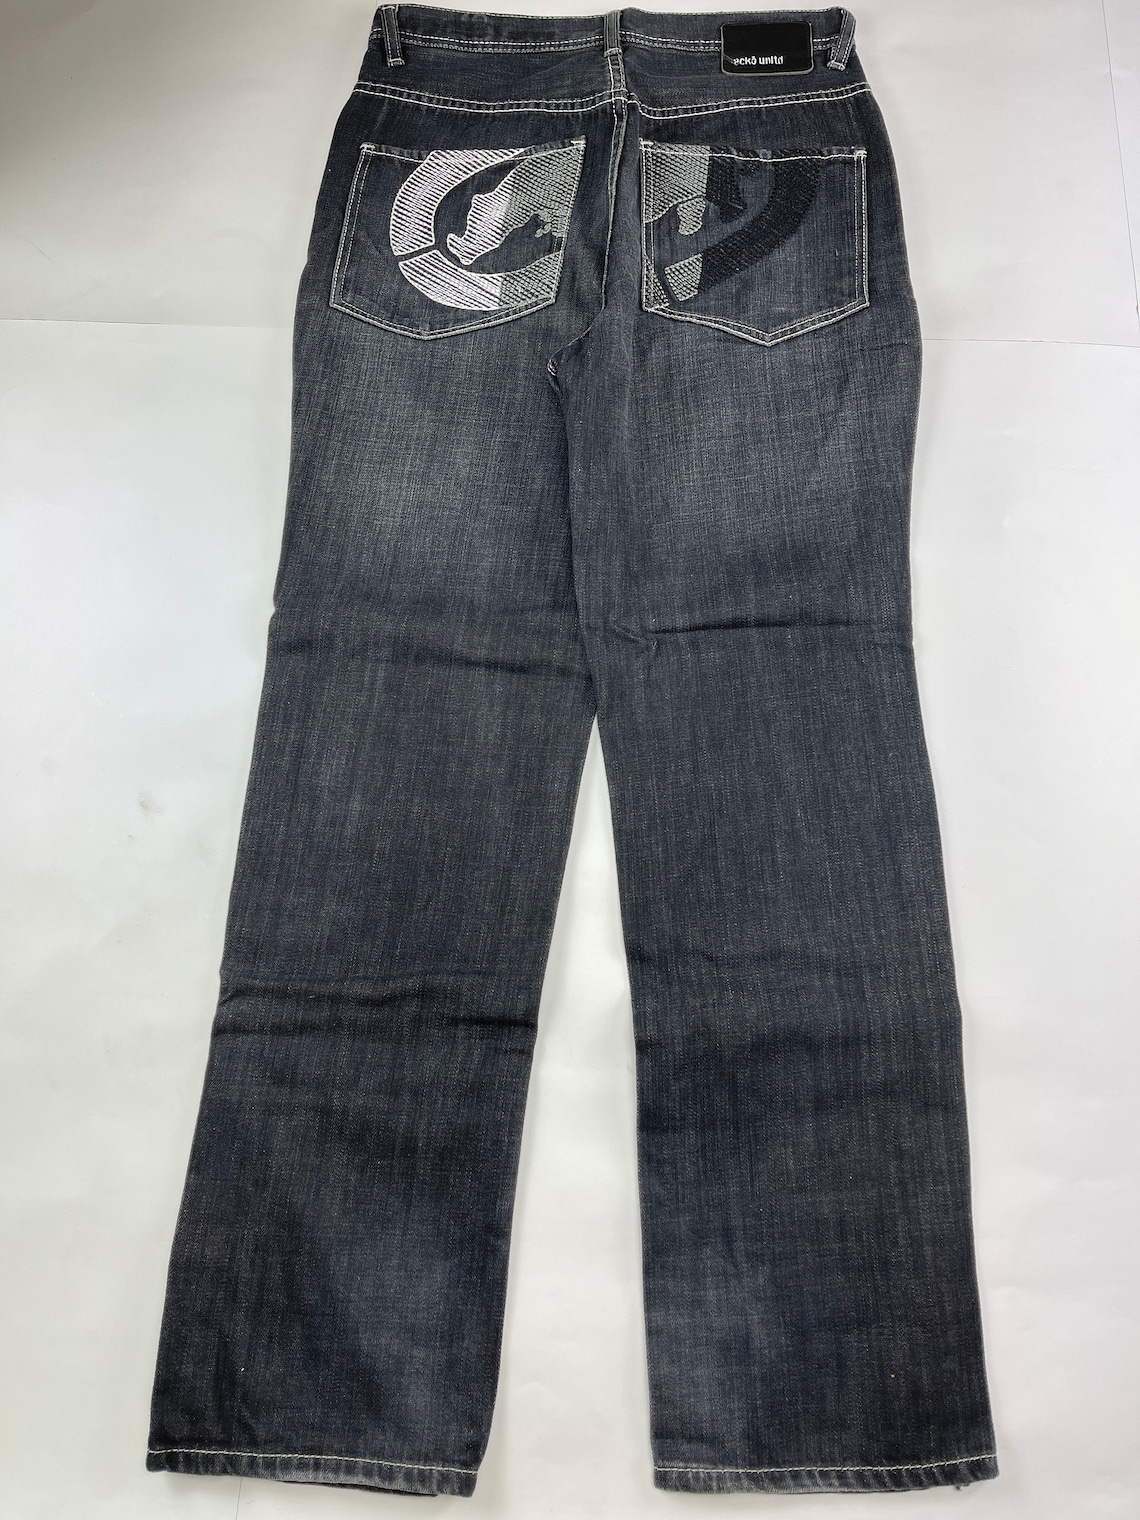 Ecko Unltd Jeans Black Vintage Baggy Pants 90s Hip Hop | Etsy